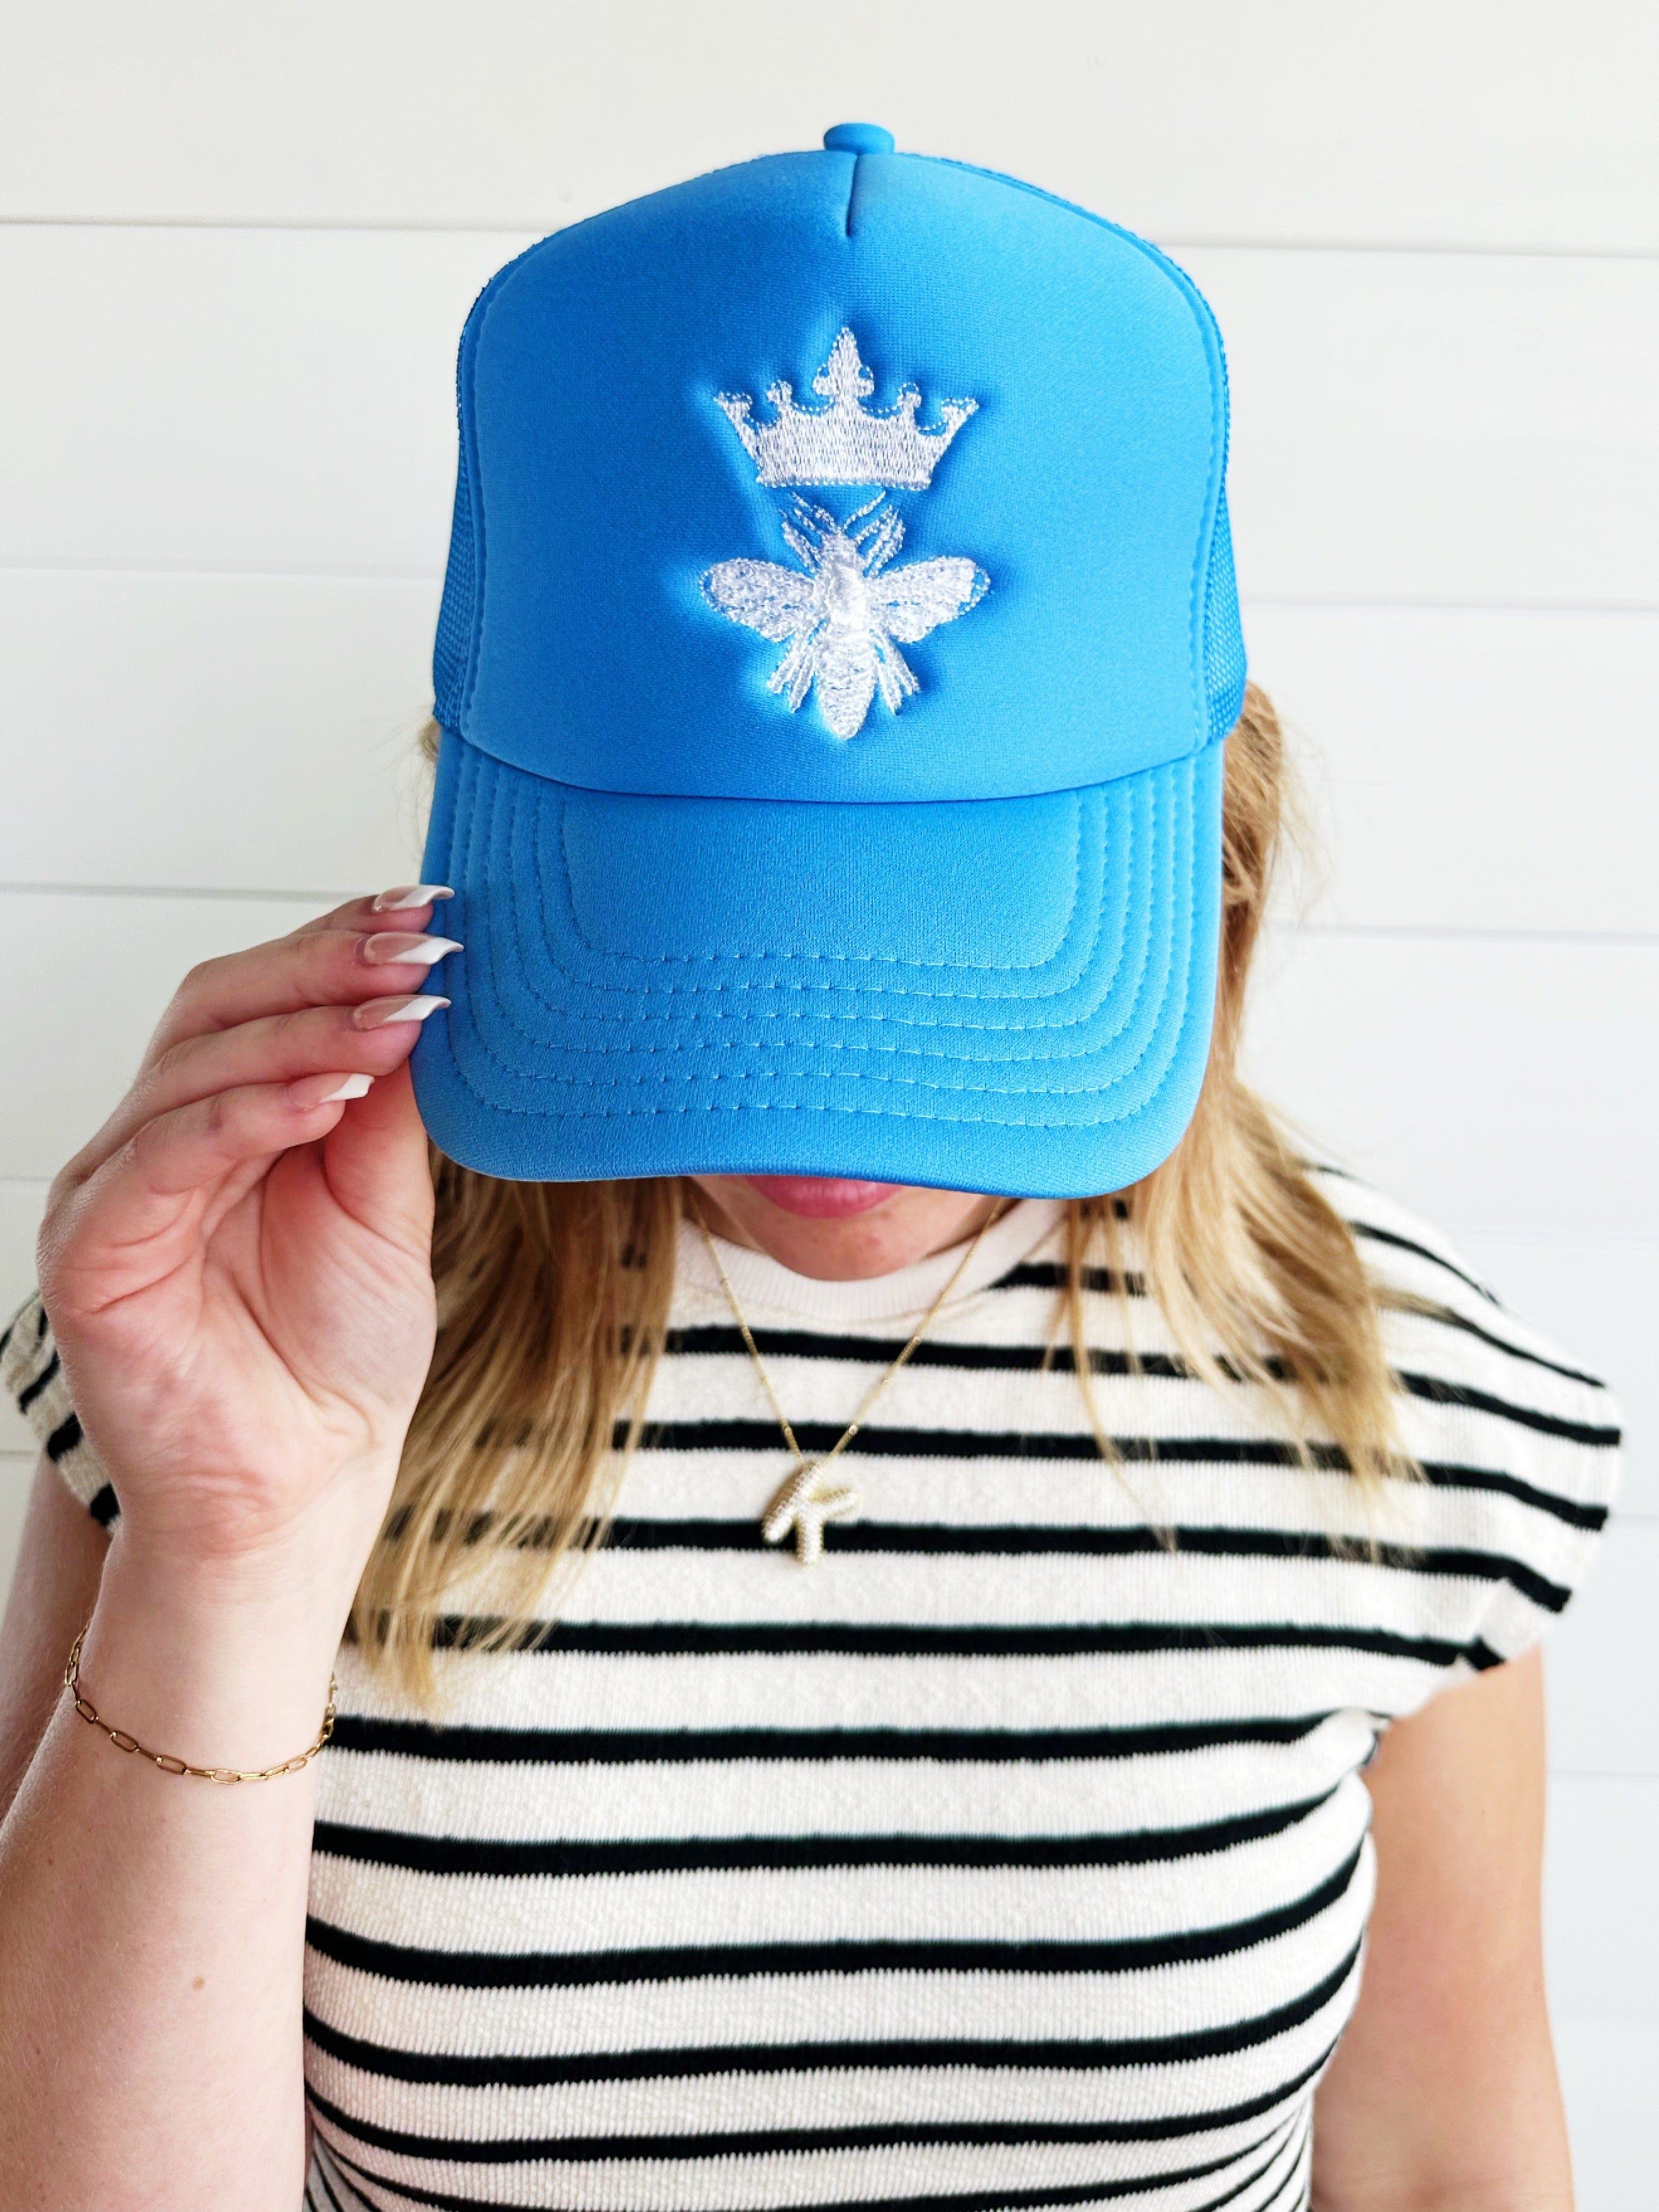 Sassy Cinnamon Accessories - Hats Queen Bee Trucker Hat-Blue 83655414